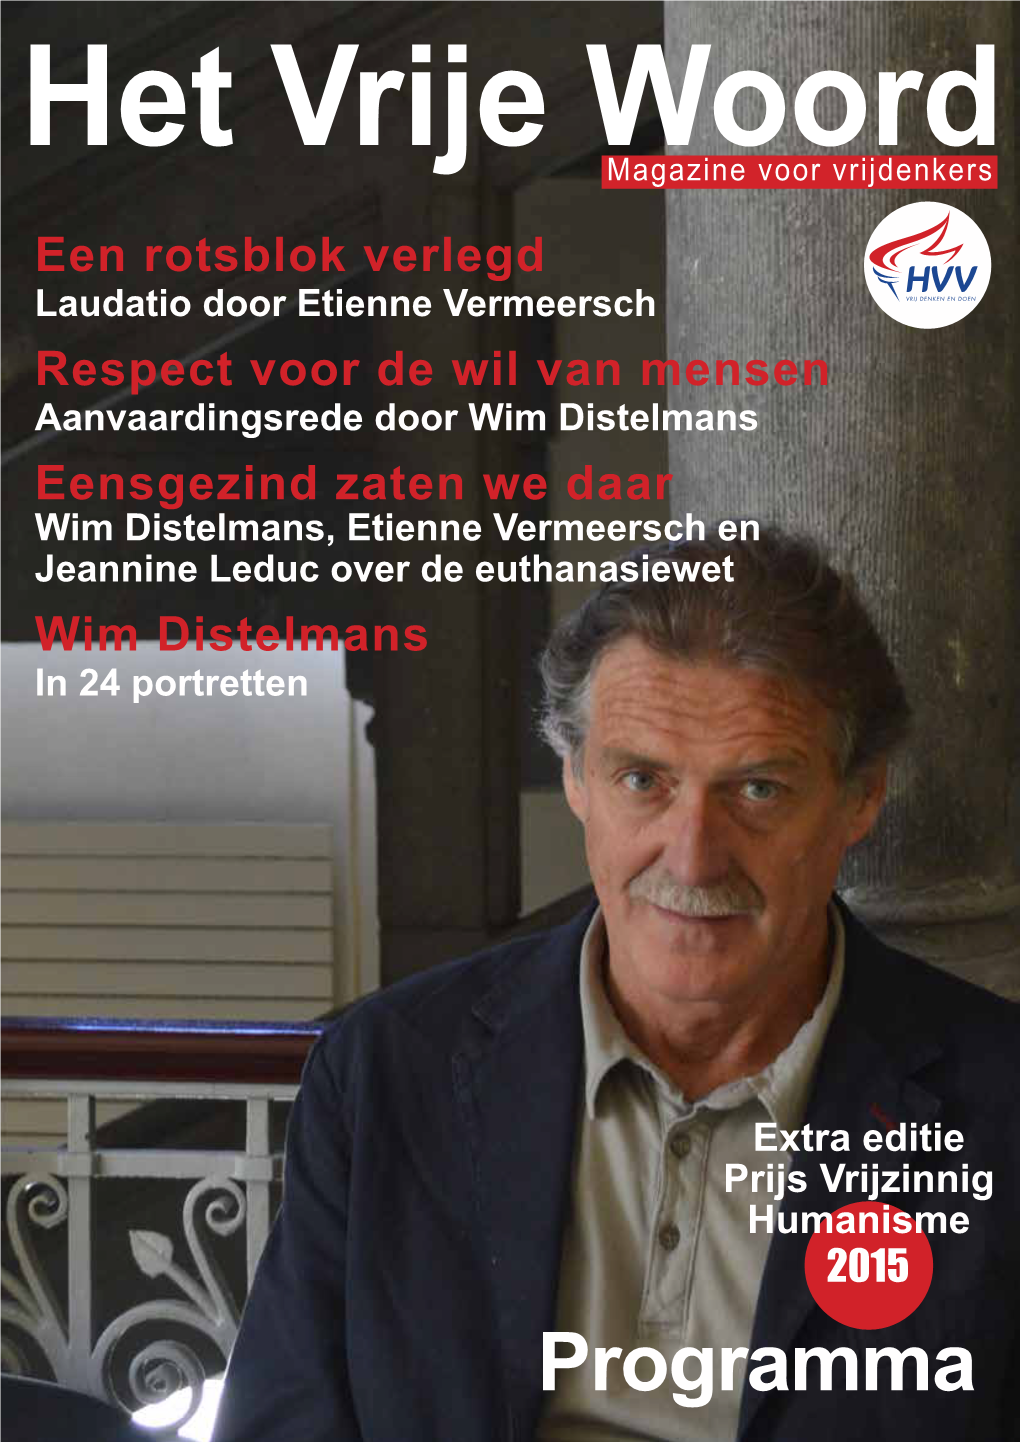 Prijs Vrijzinnig Humanisme 21 Juni 2015: Wim Distelmans